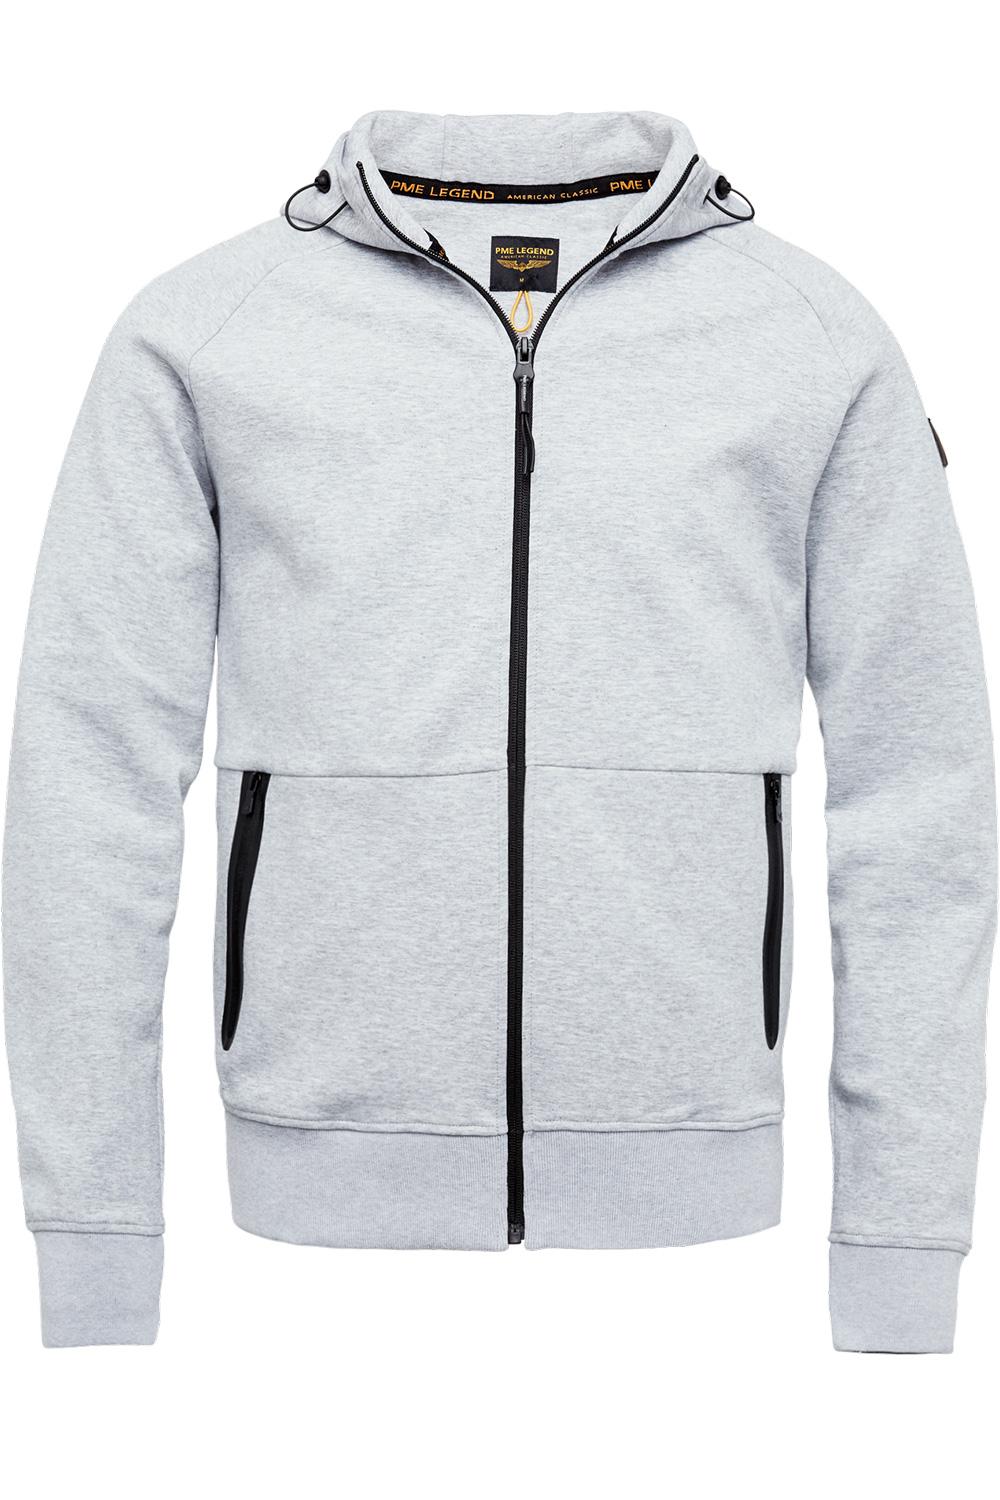 interlock sweater zip jacket psw2202426 legend vest 960